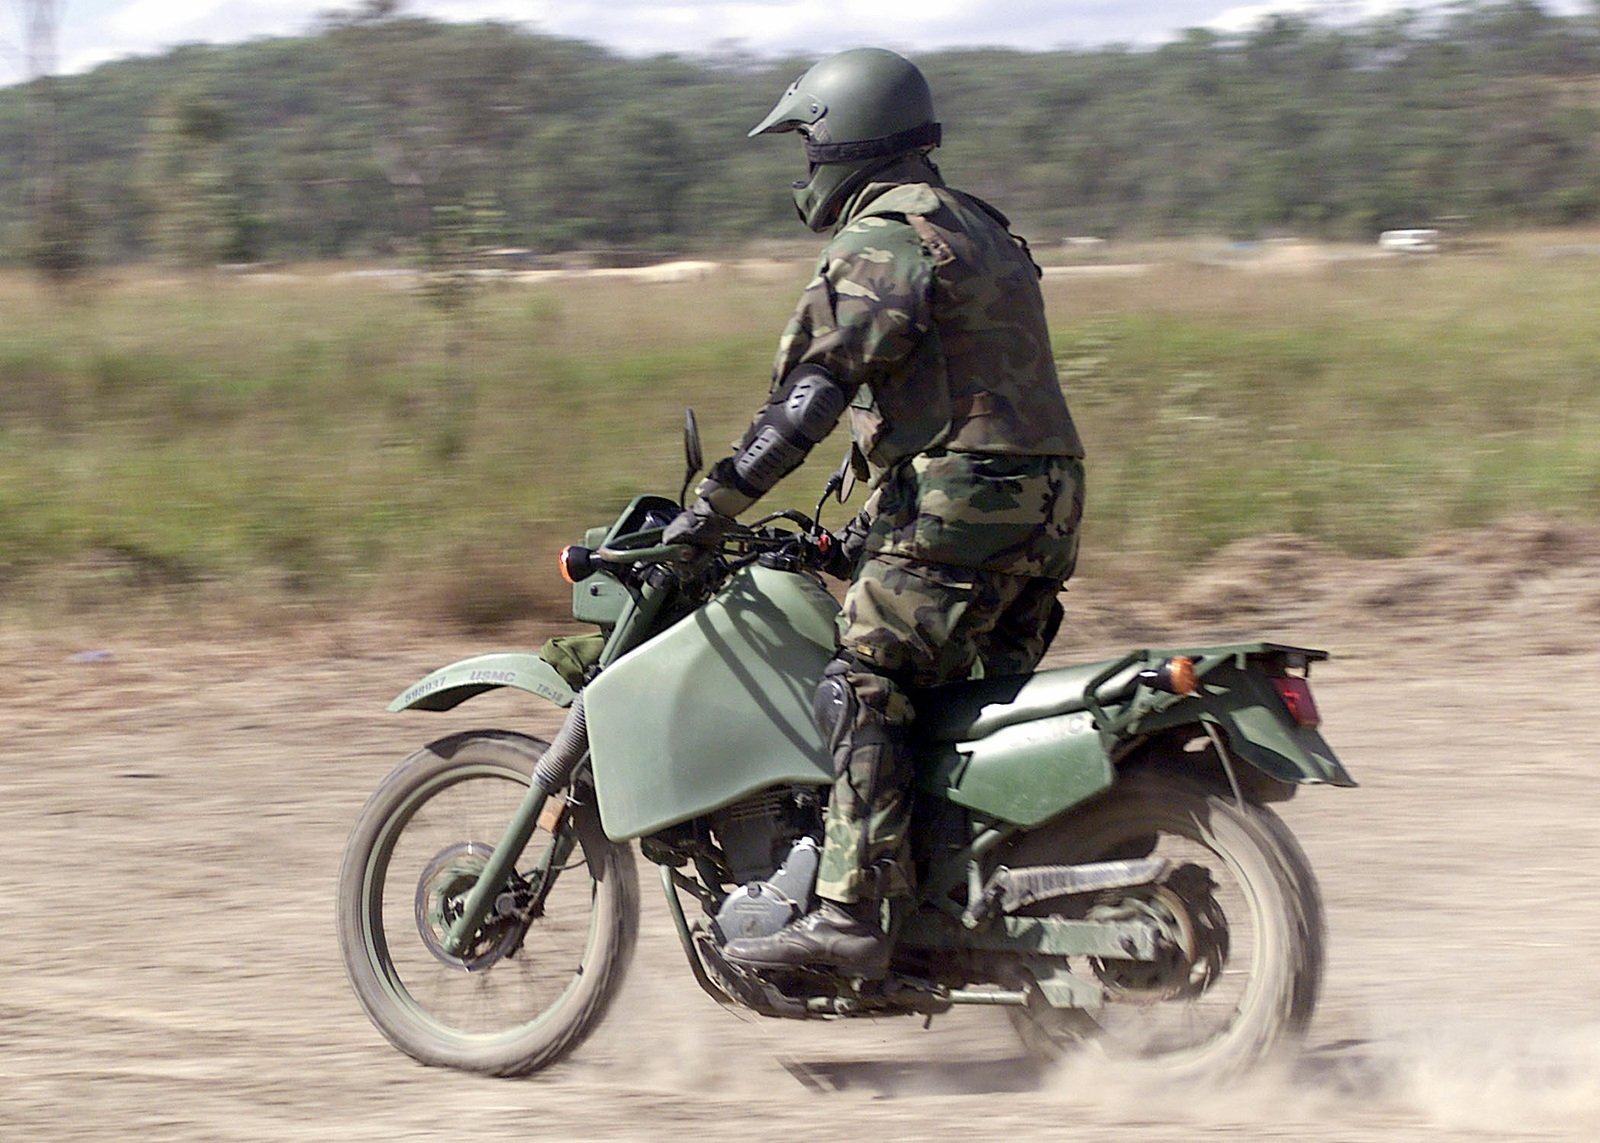 Байков военная сцена. M1030 военный мотоцикл. KLR 650 военный байк. Тактический мотоцикл. Современные армейские мотоциклы.